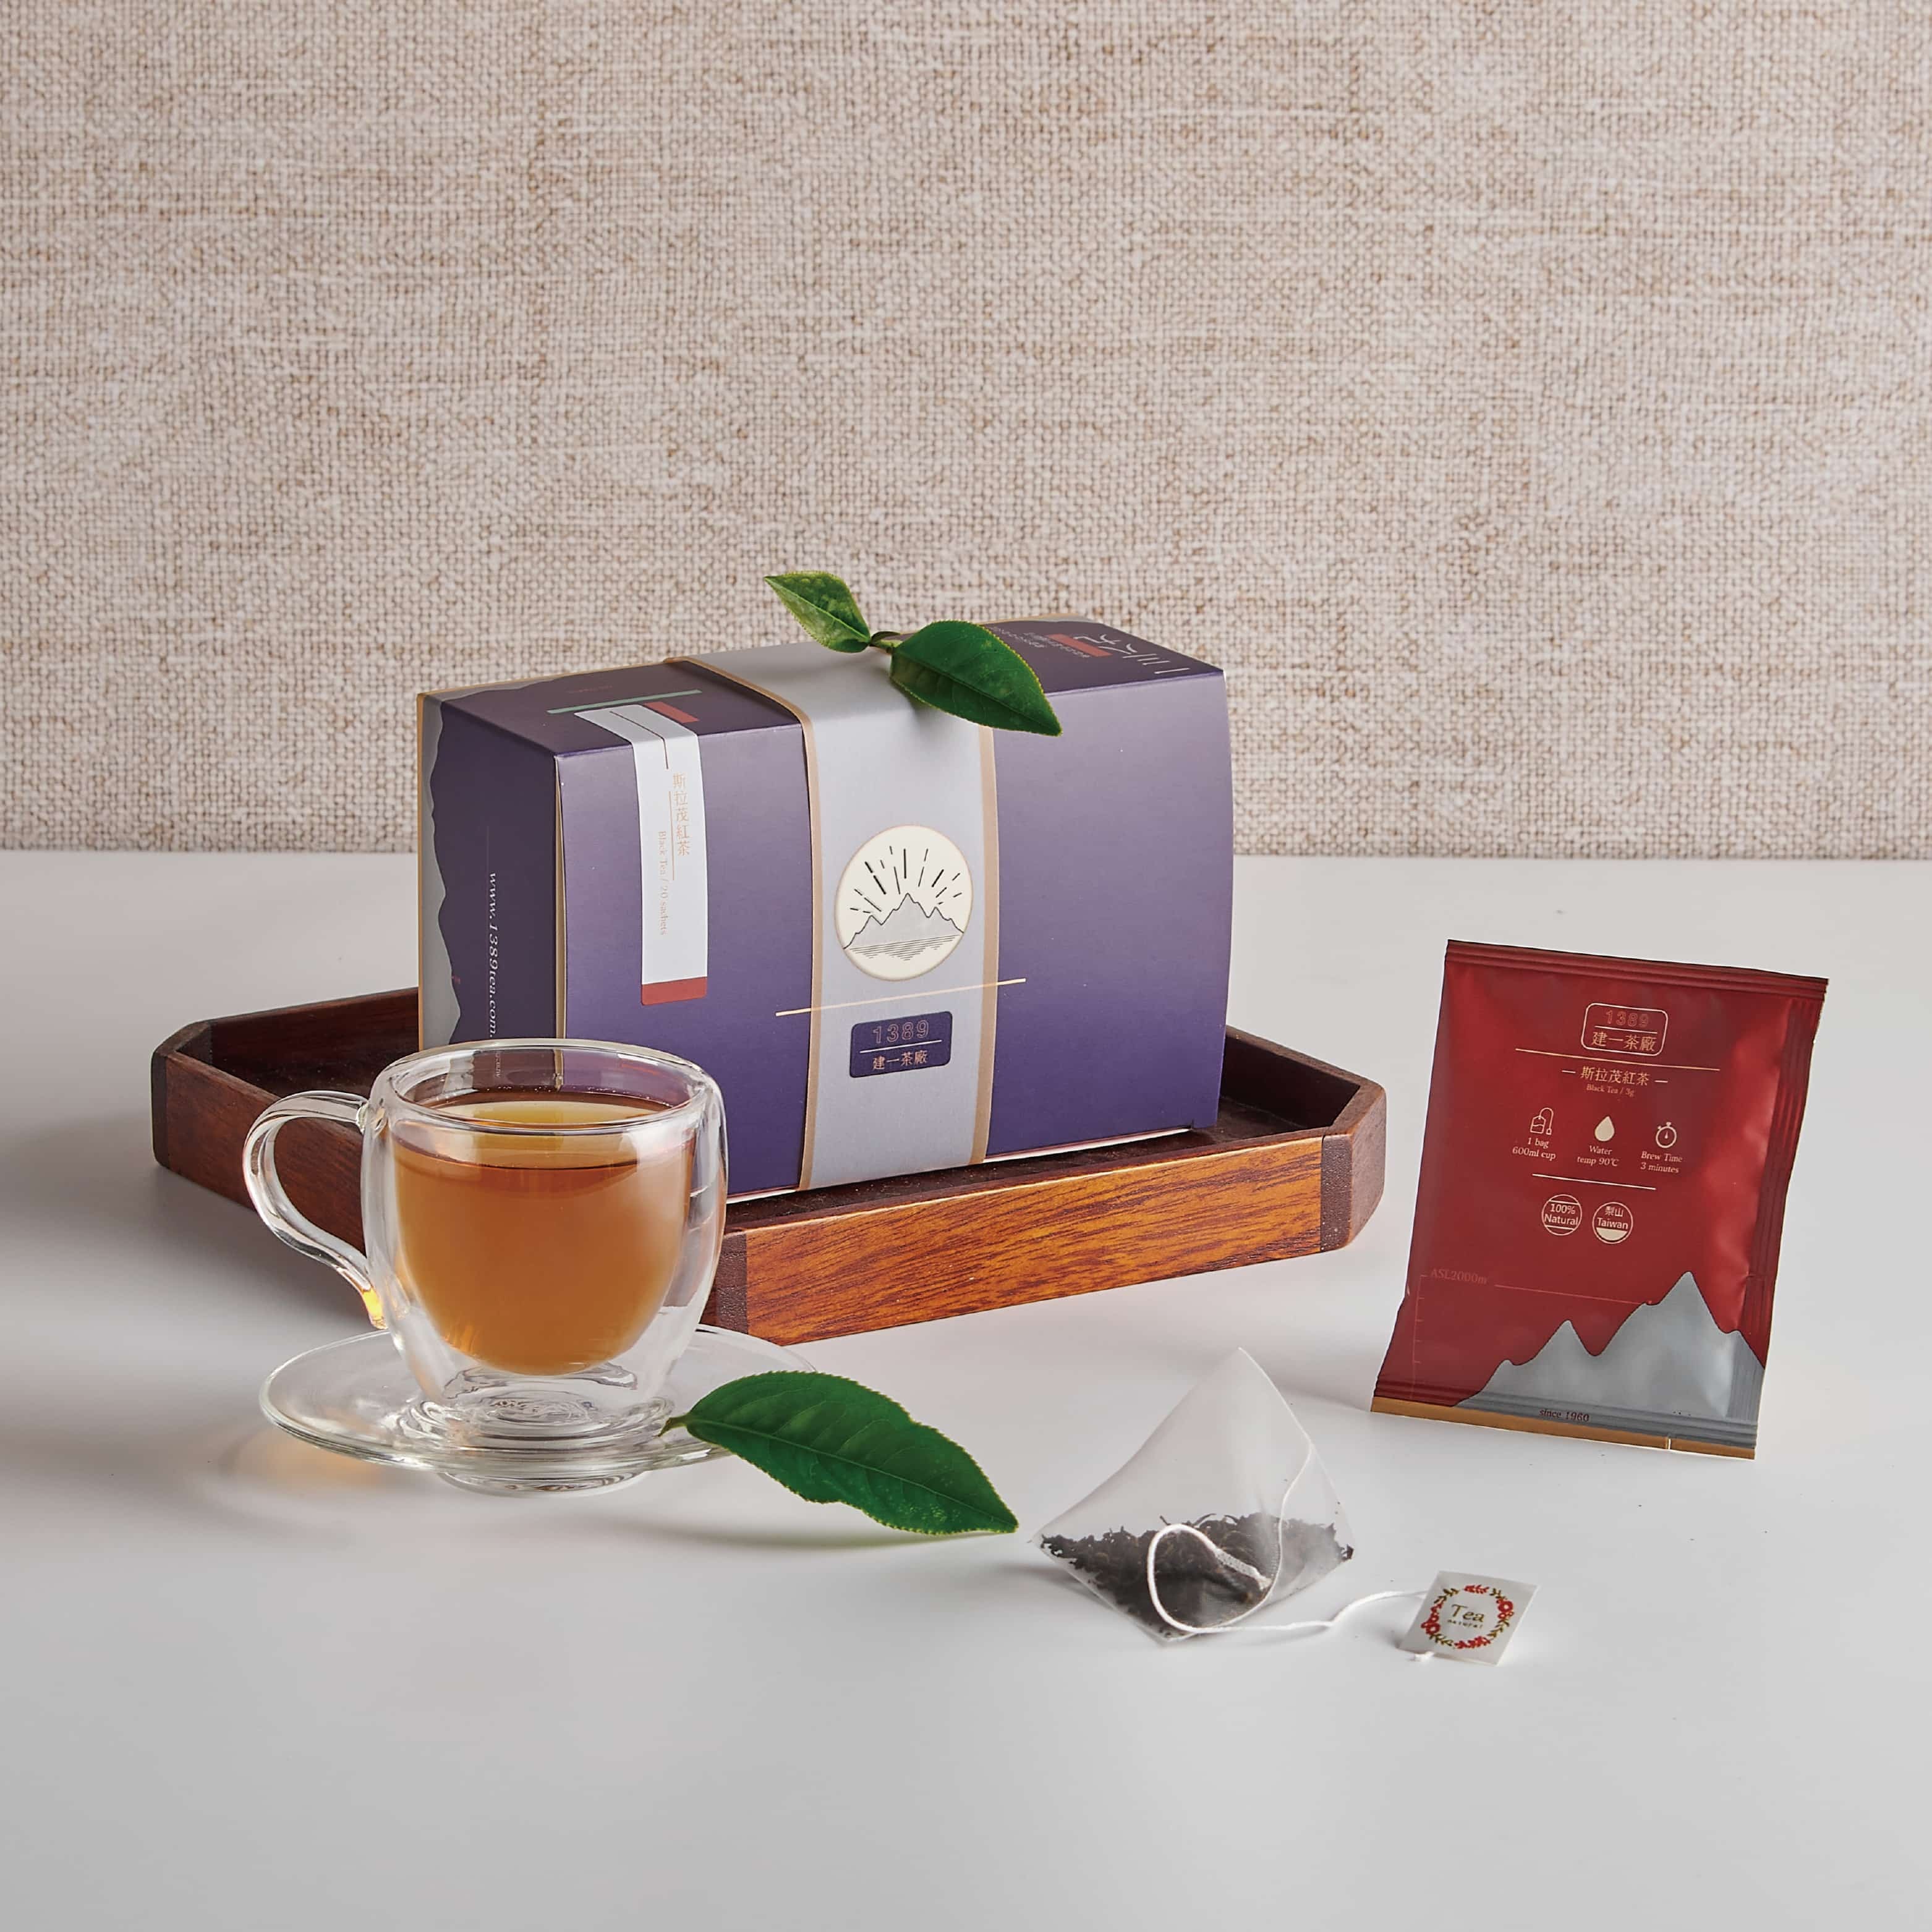 紅茶包- 建一茶廠|斯拉茂紅茶3g 20入|50年工法手捻梨山高山茶葉|立體茶 